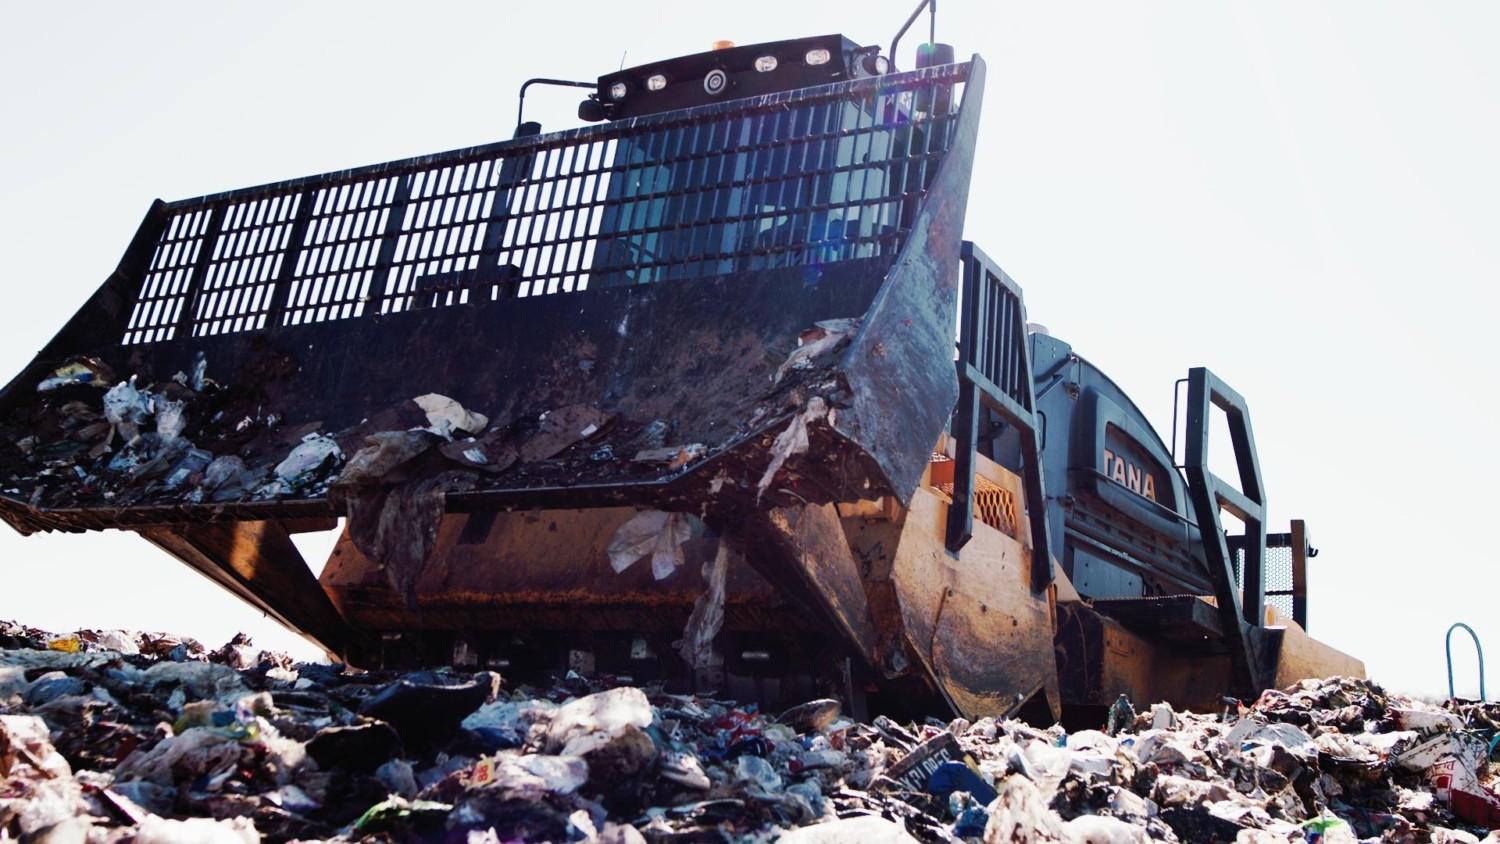 TANA E380 landfill compactor